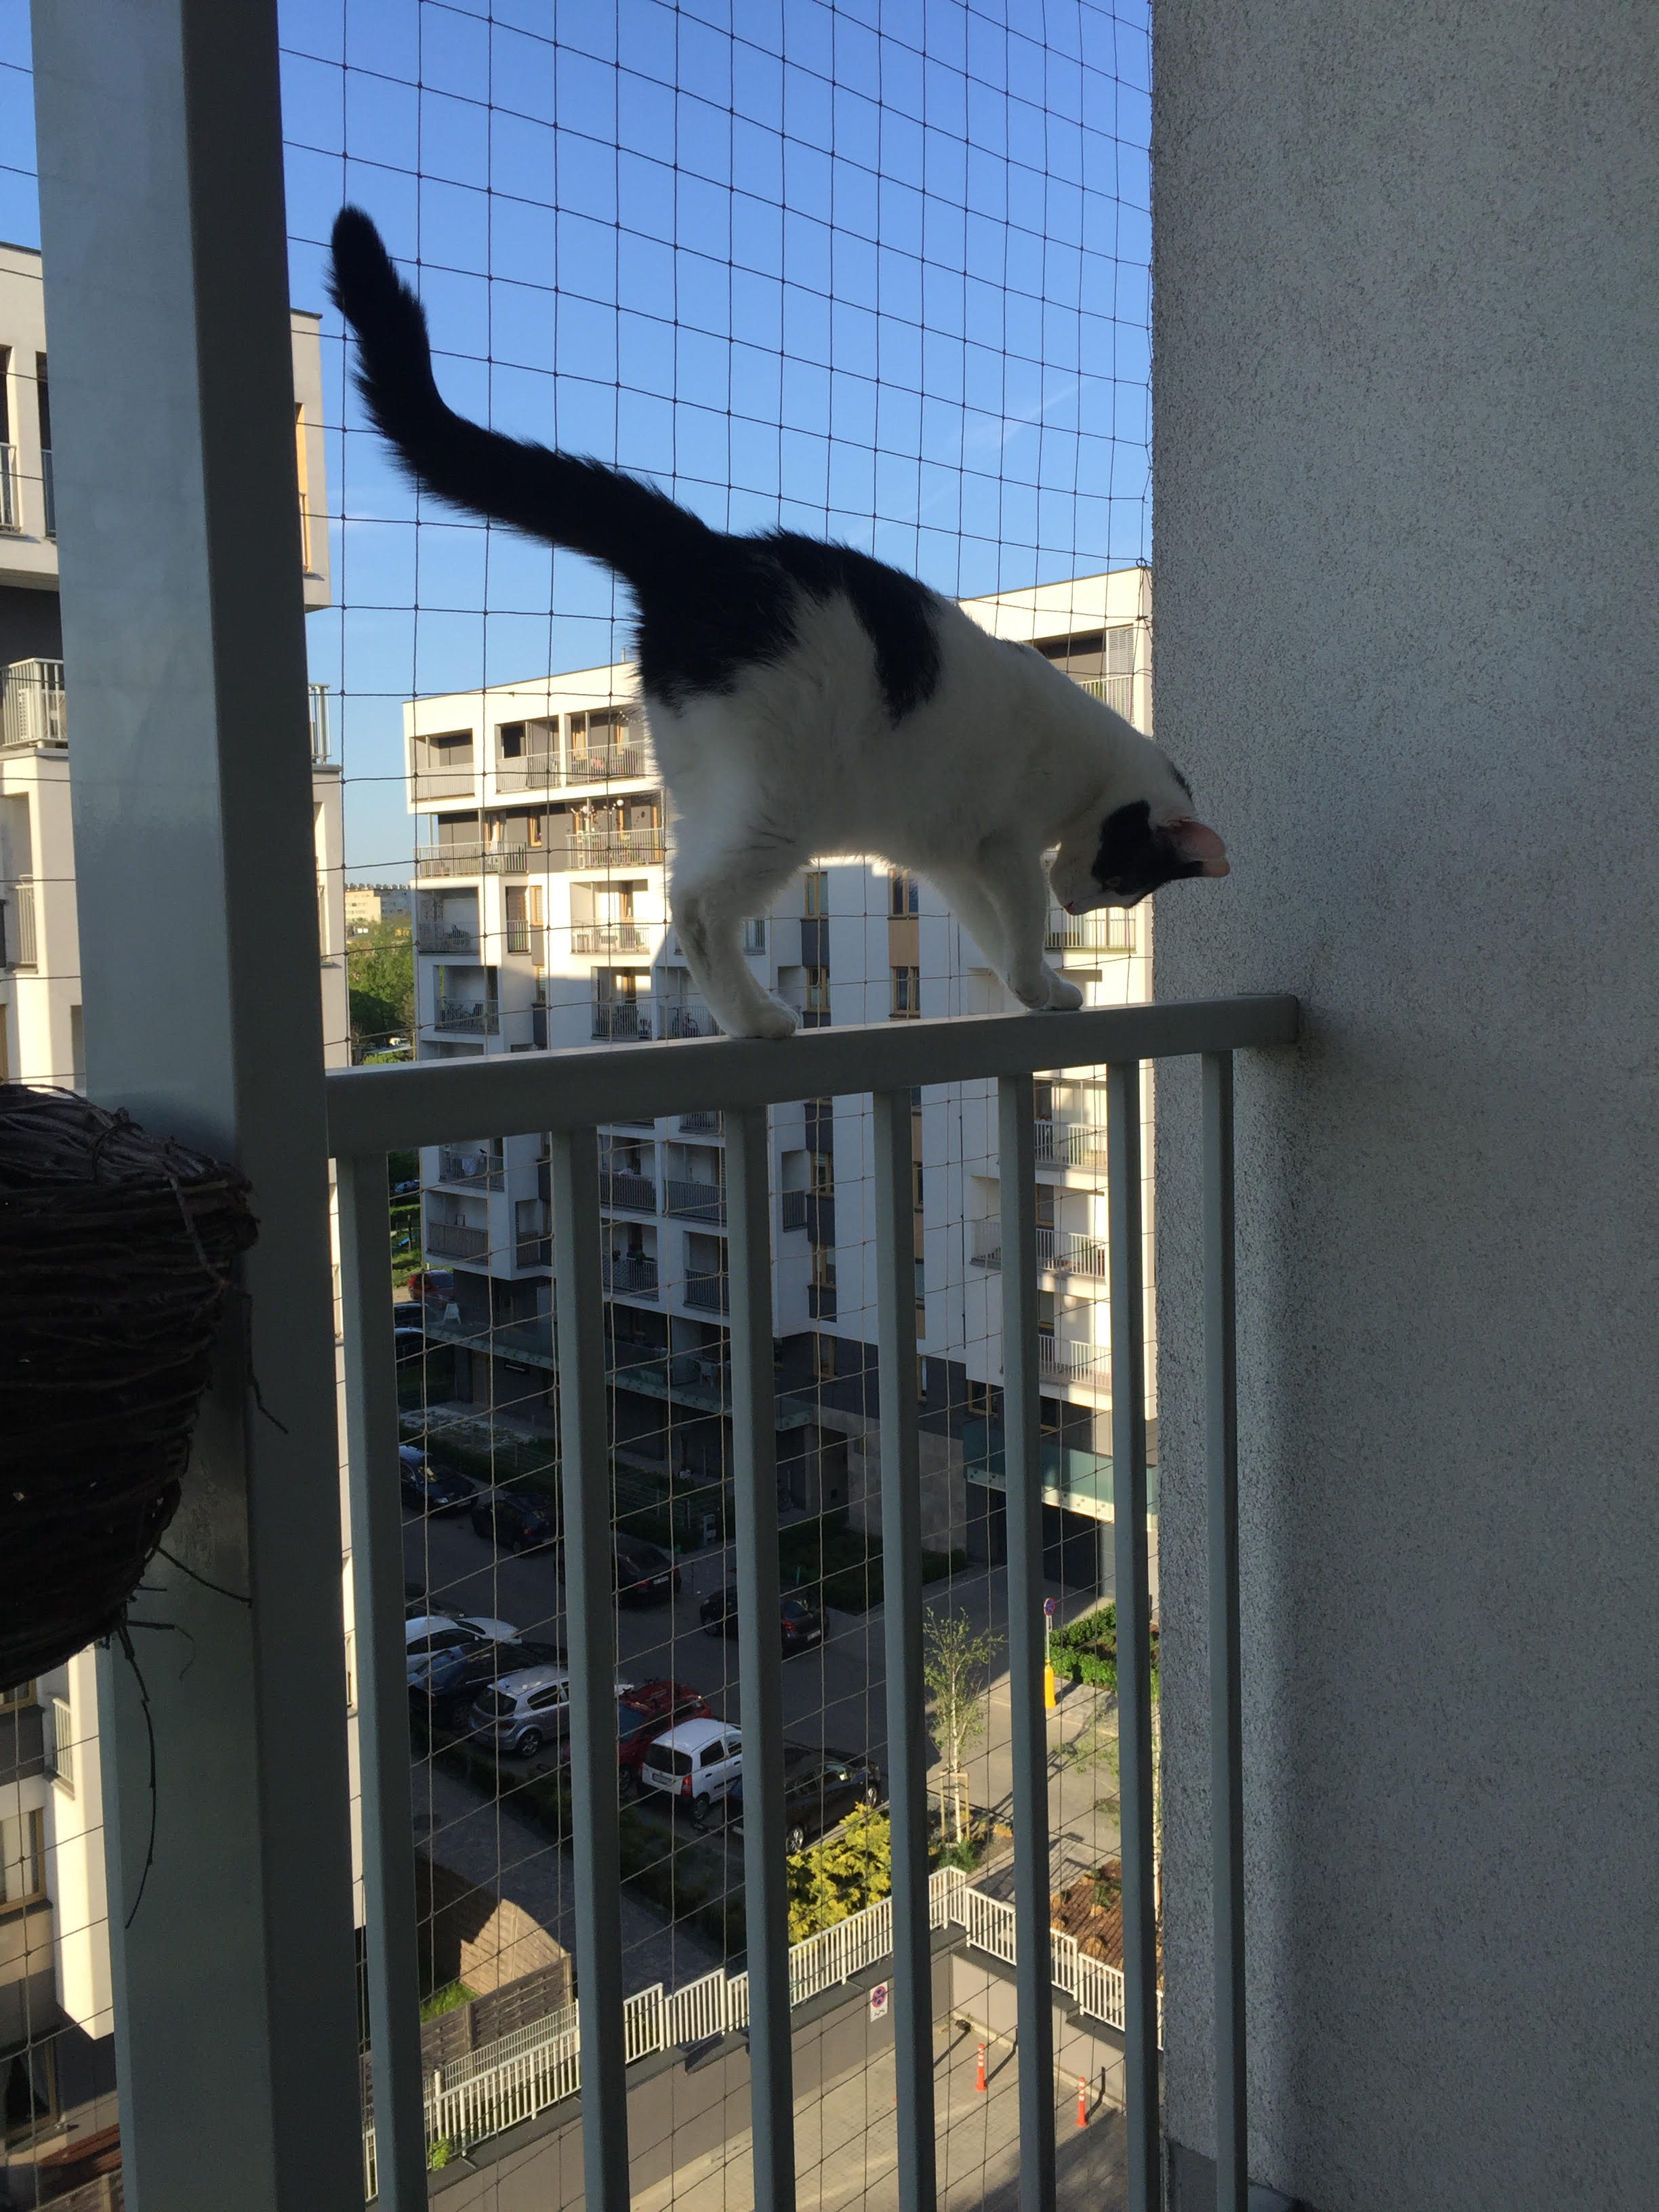 Zestaw 8x3m bez wiercenia z siatka na balkon dla kota. Kocia siatka balkonowa oczko 50x50mm. 